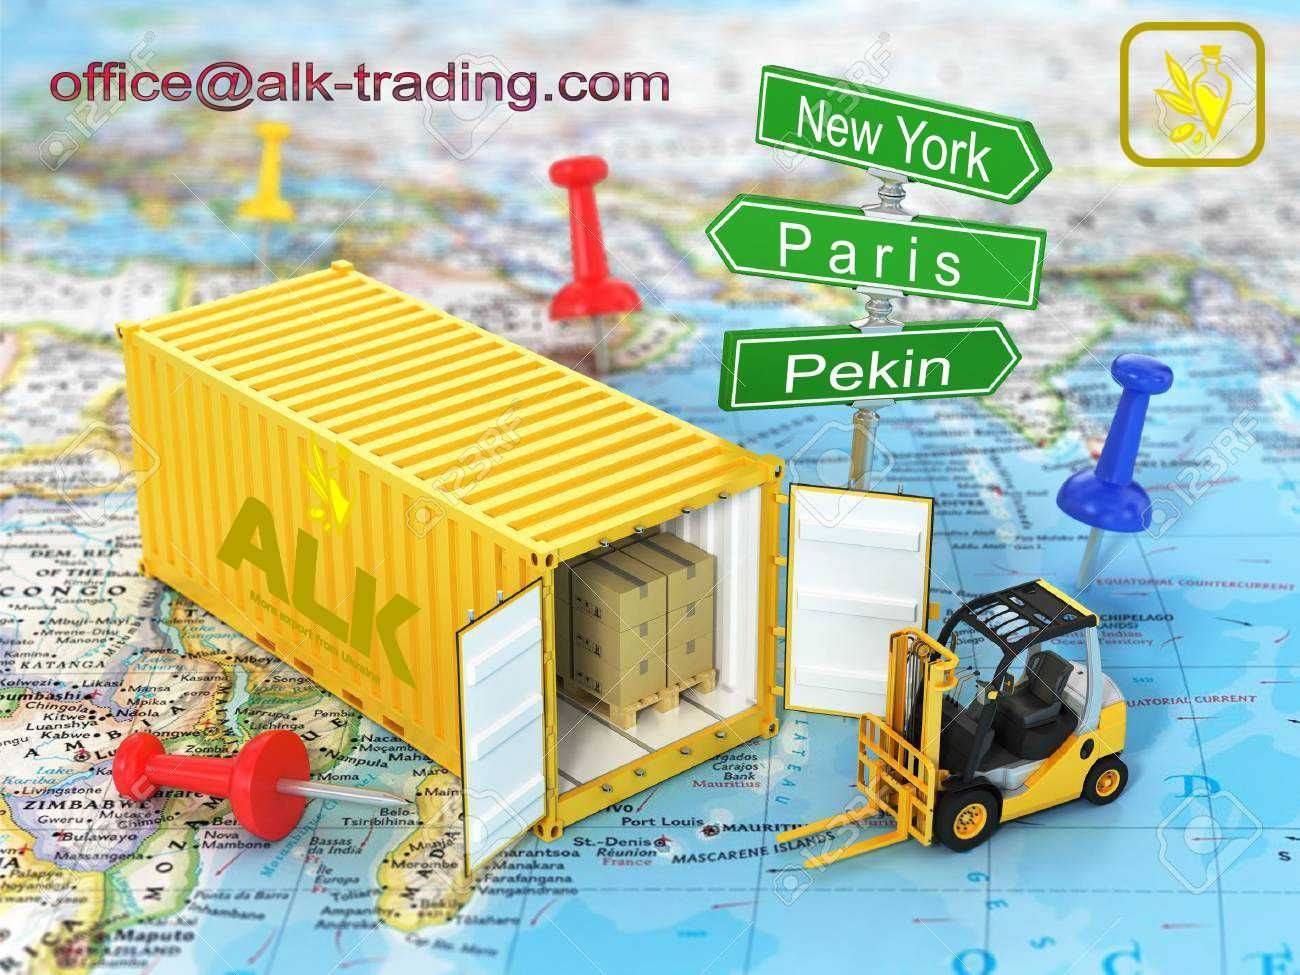 ALK Trading LLC